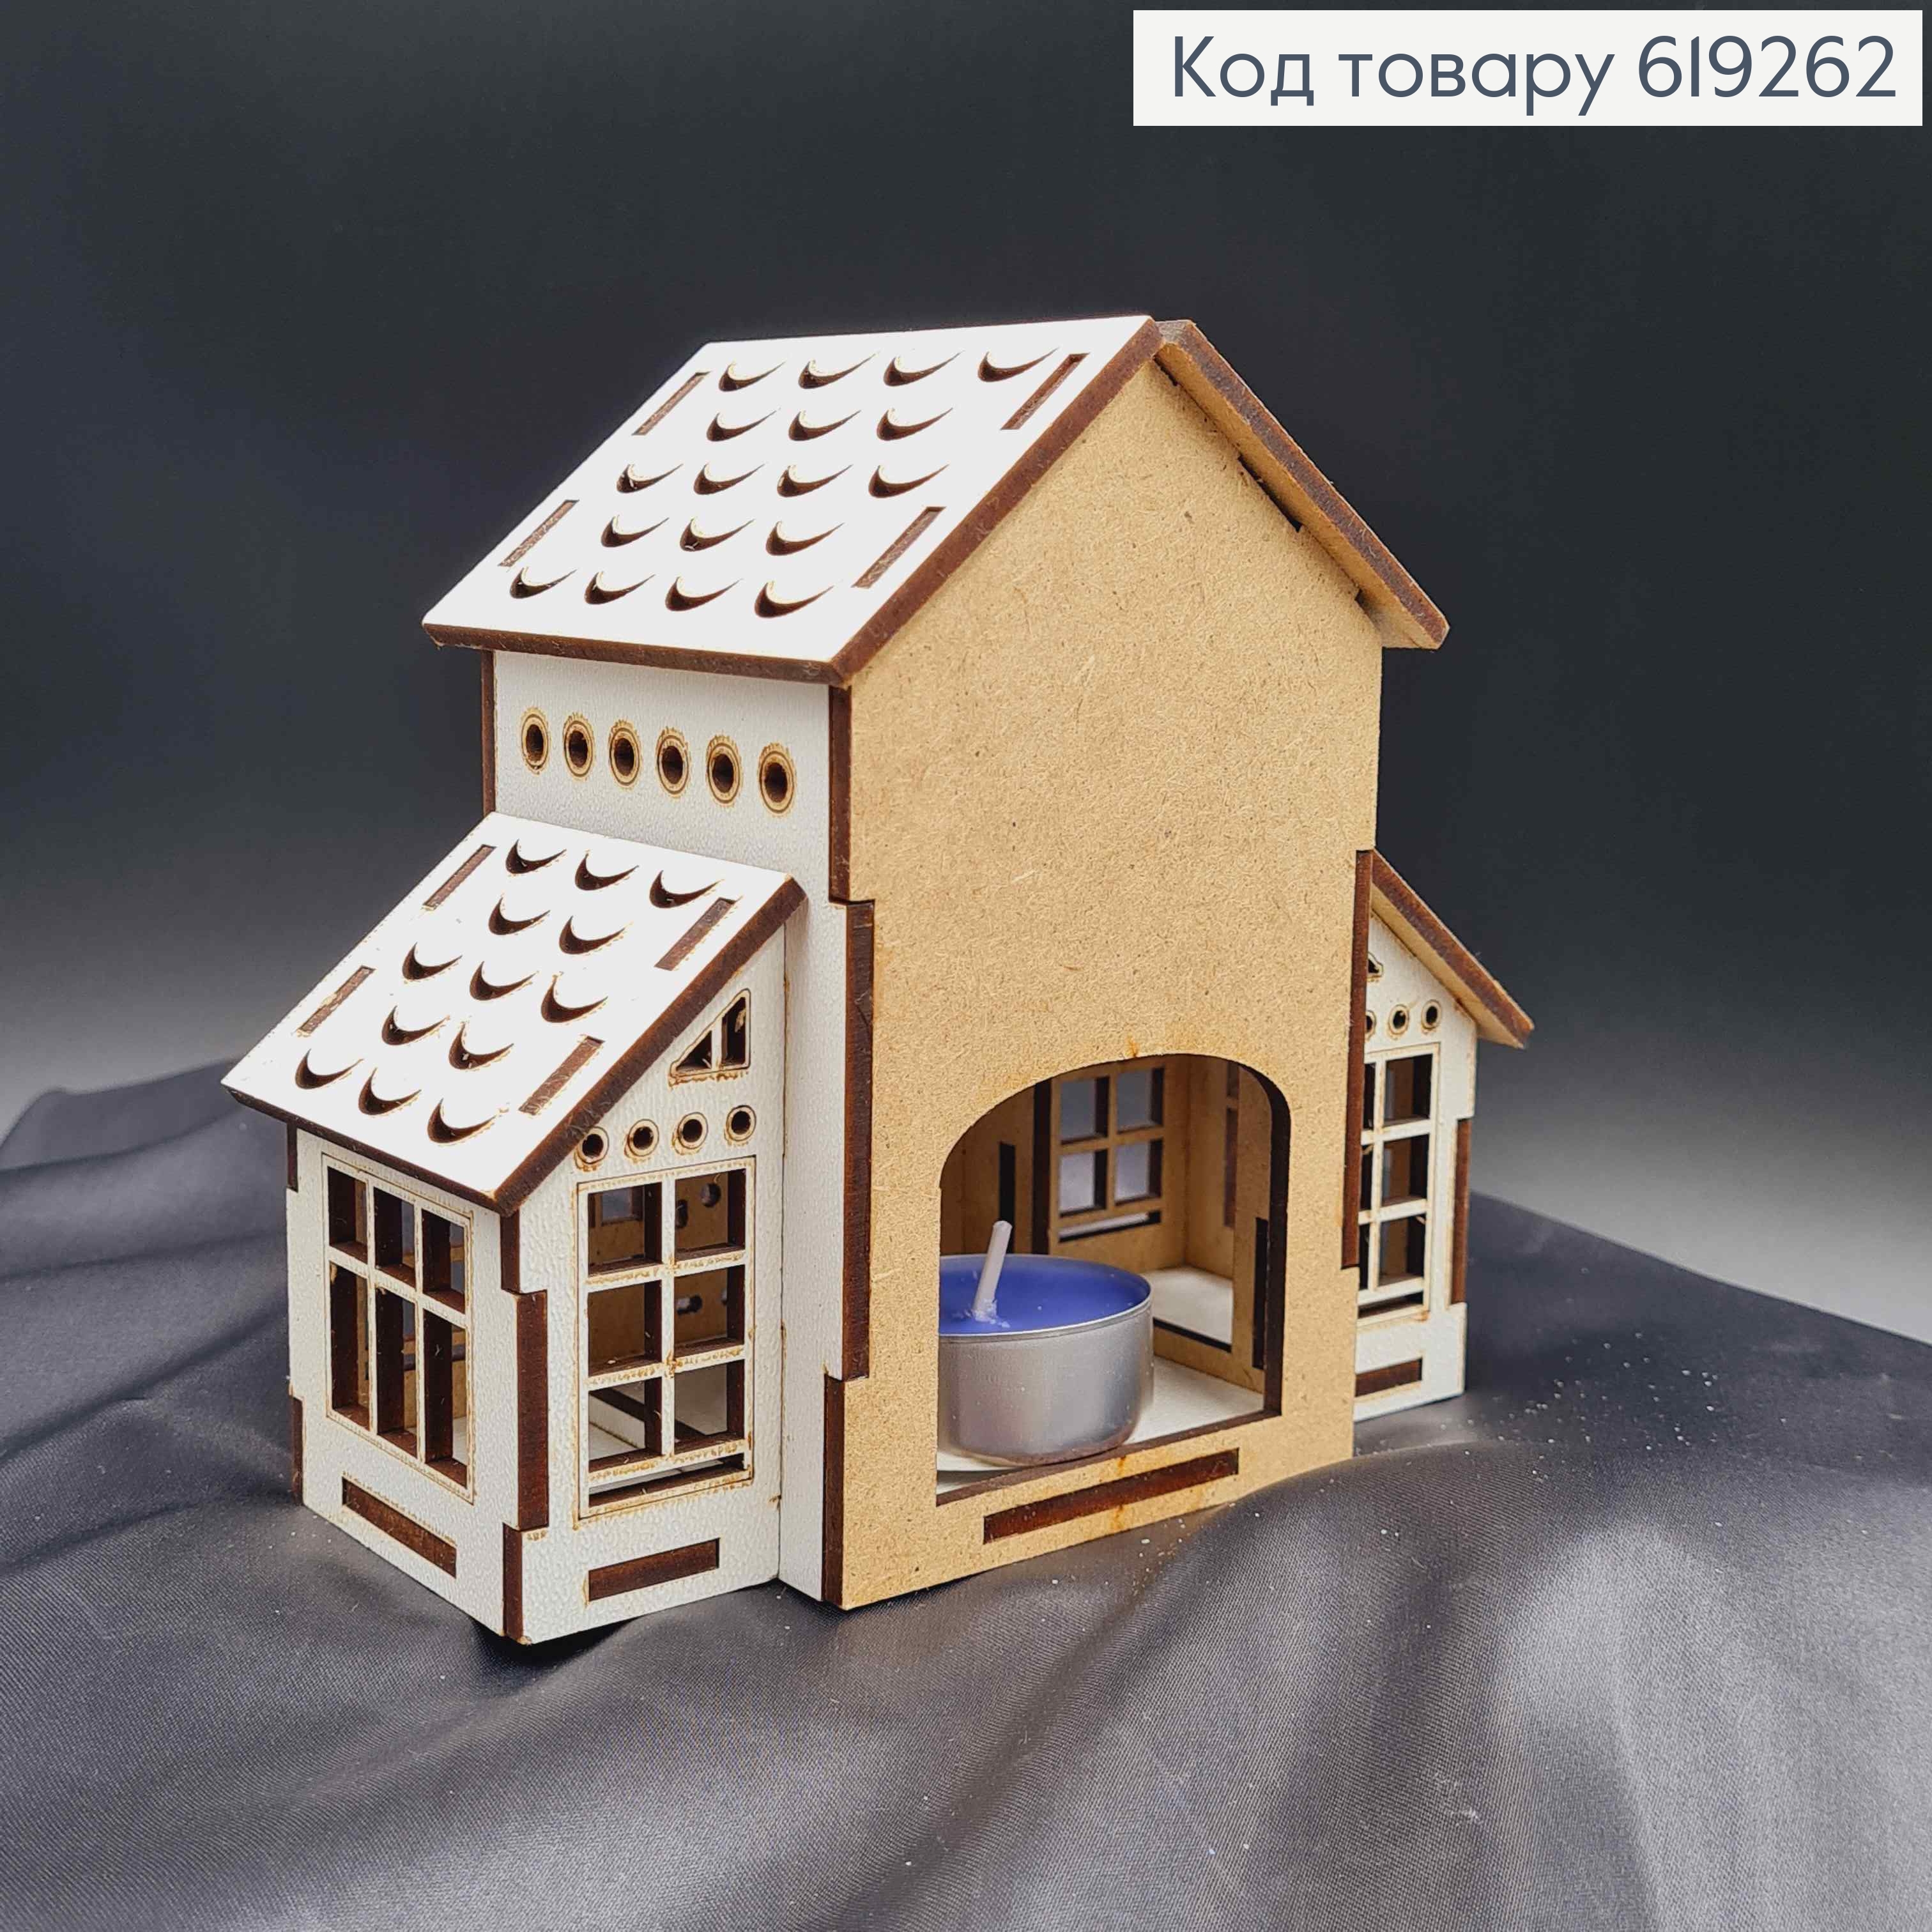 Подсвечник, деревянный белый домик со звездочками, 13*14,5*8см, Украина. 619262 фото 2